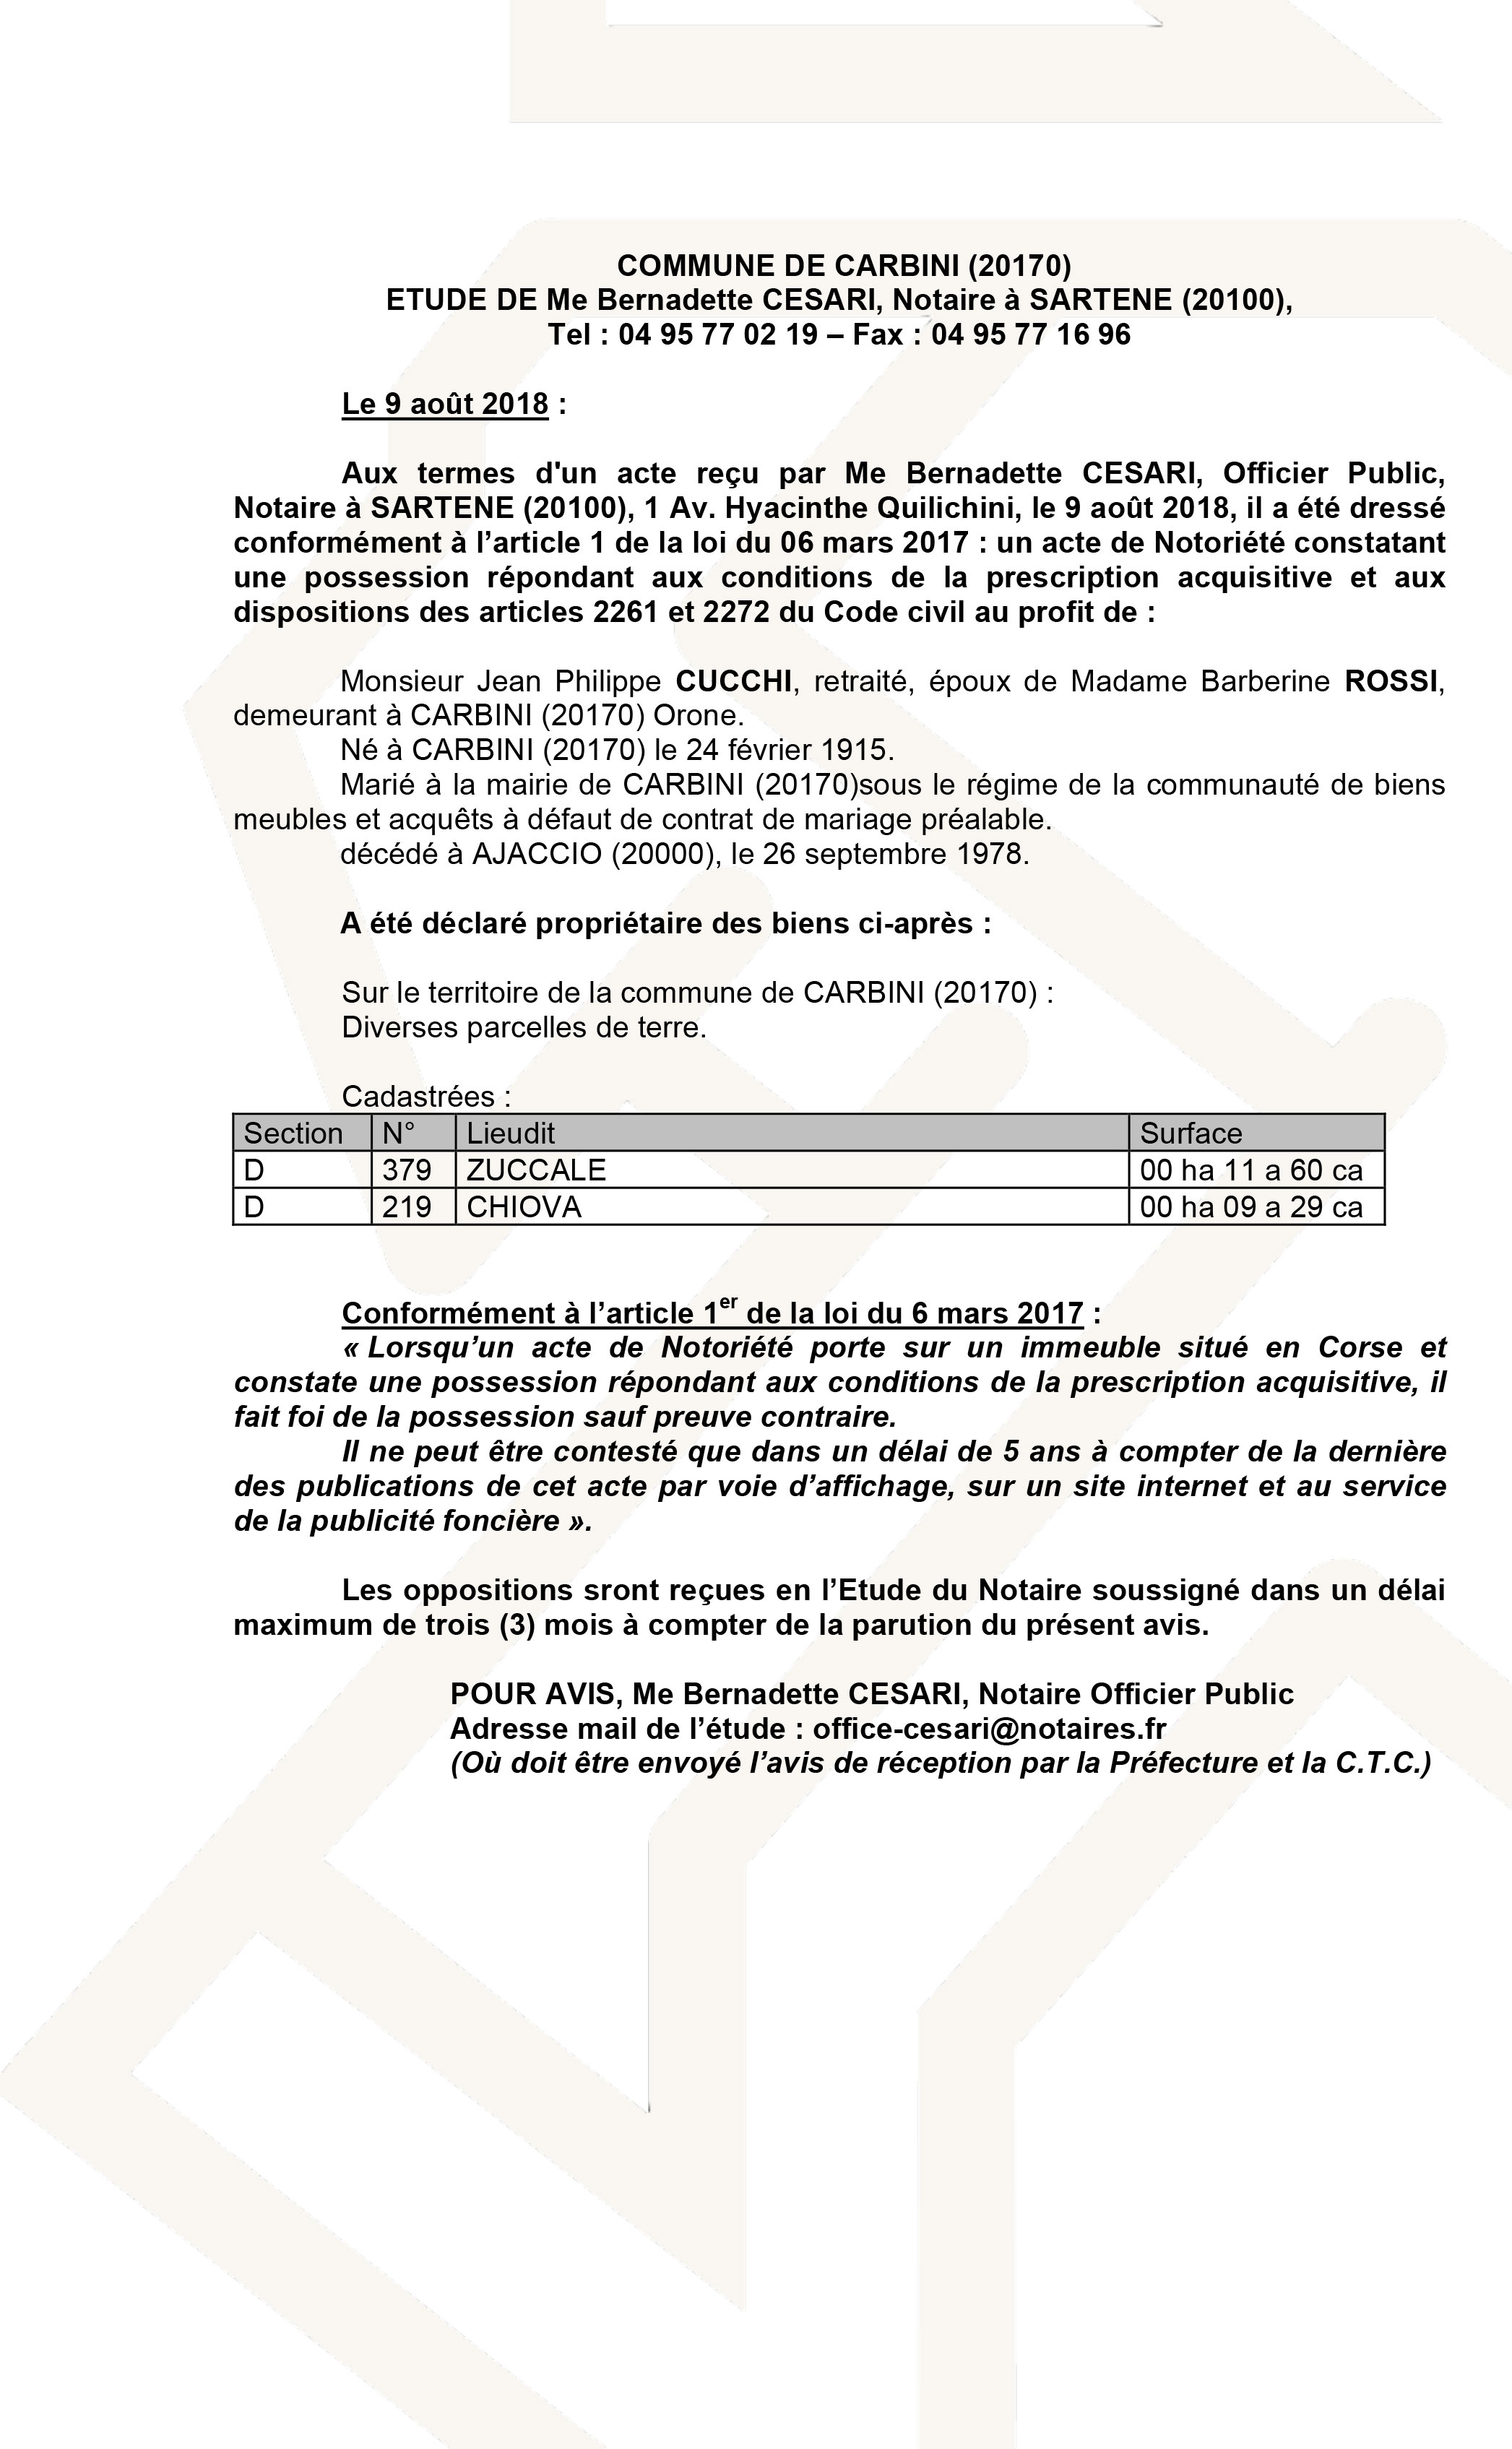 Avis de création de titre de propriété - commune de Carbini (Corse du Sud)